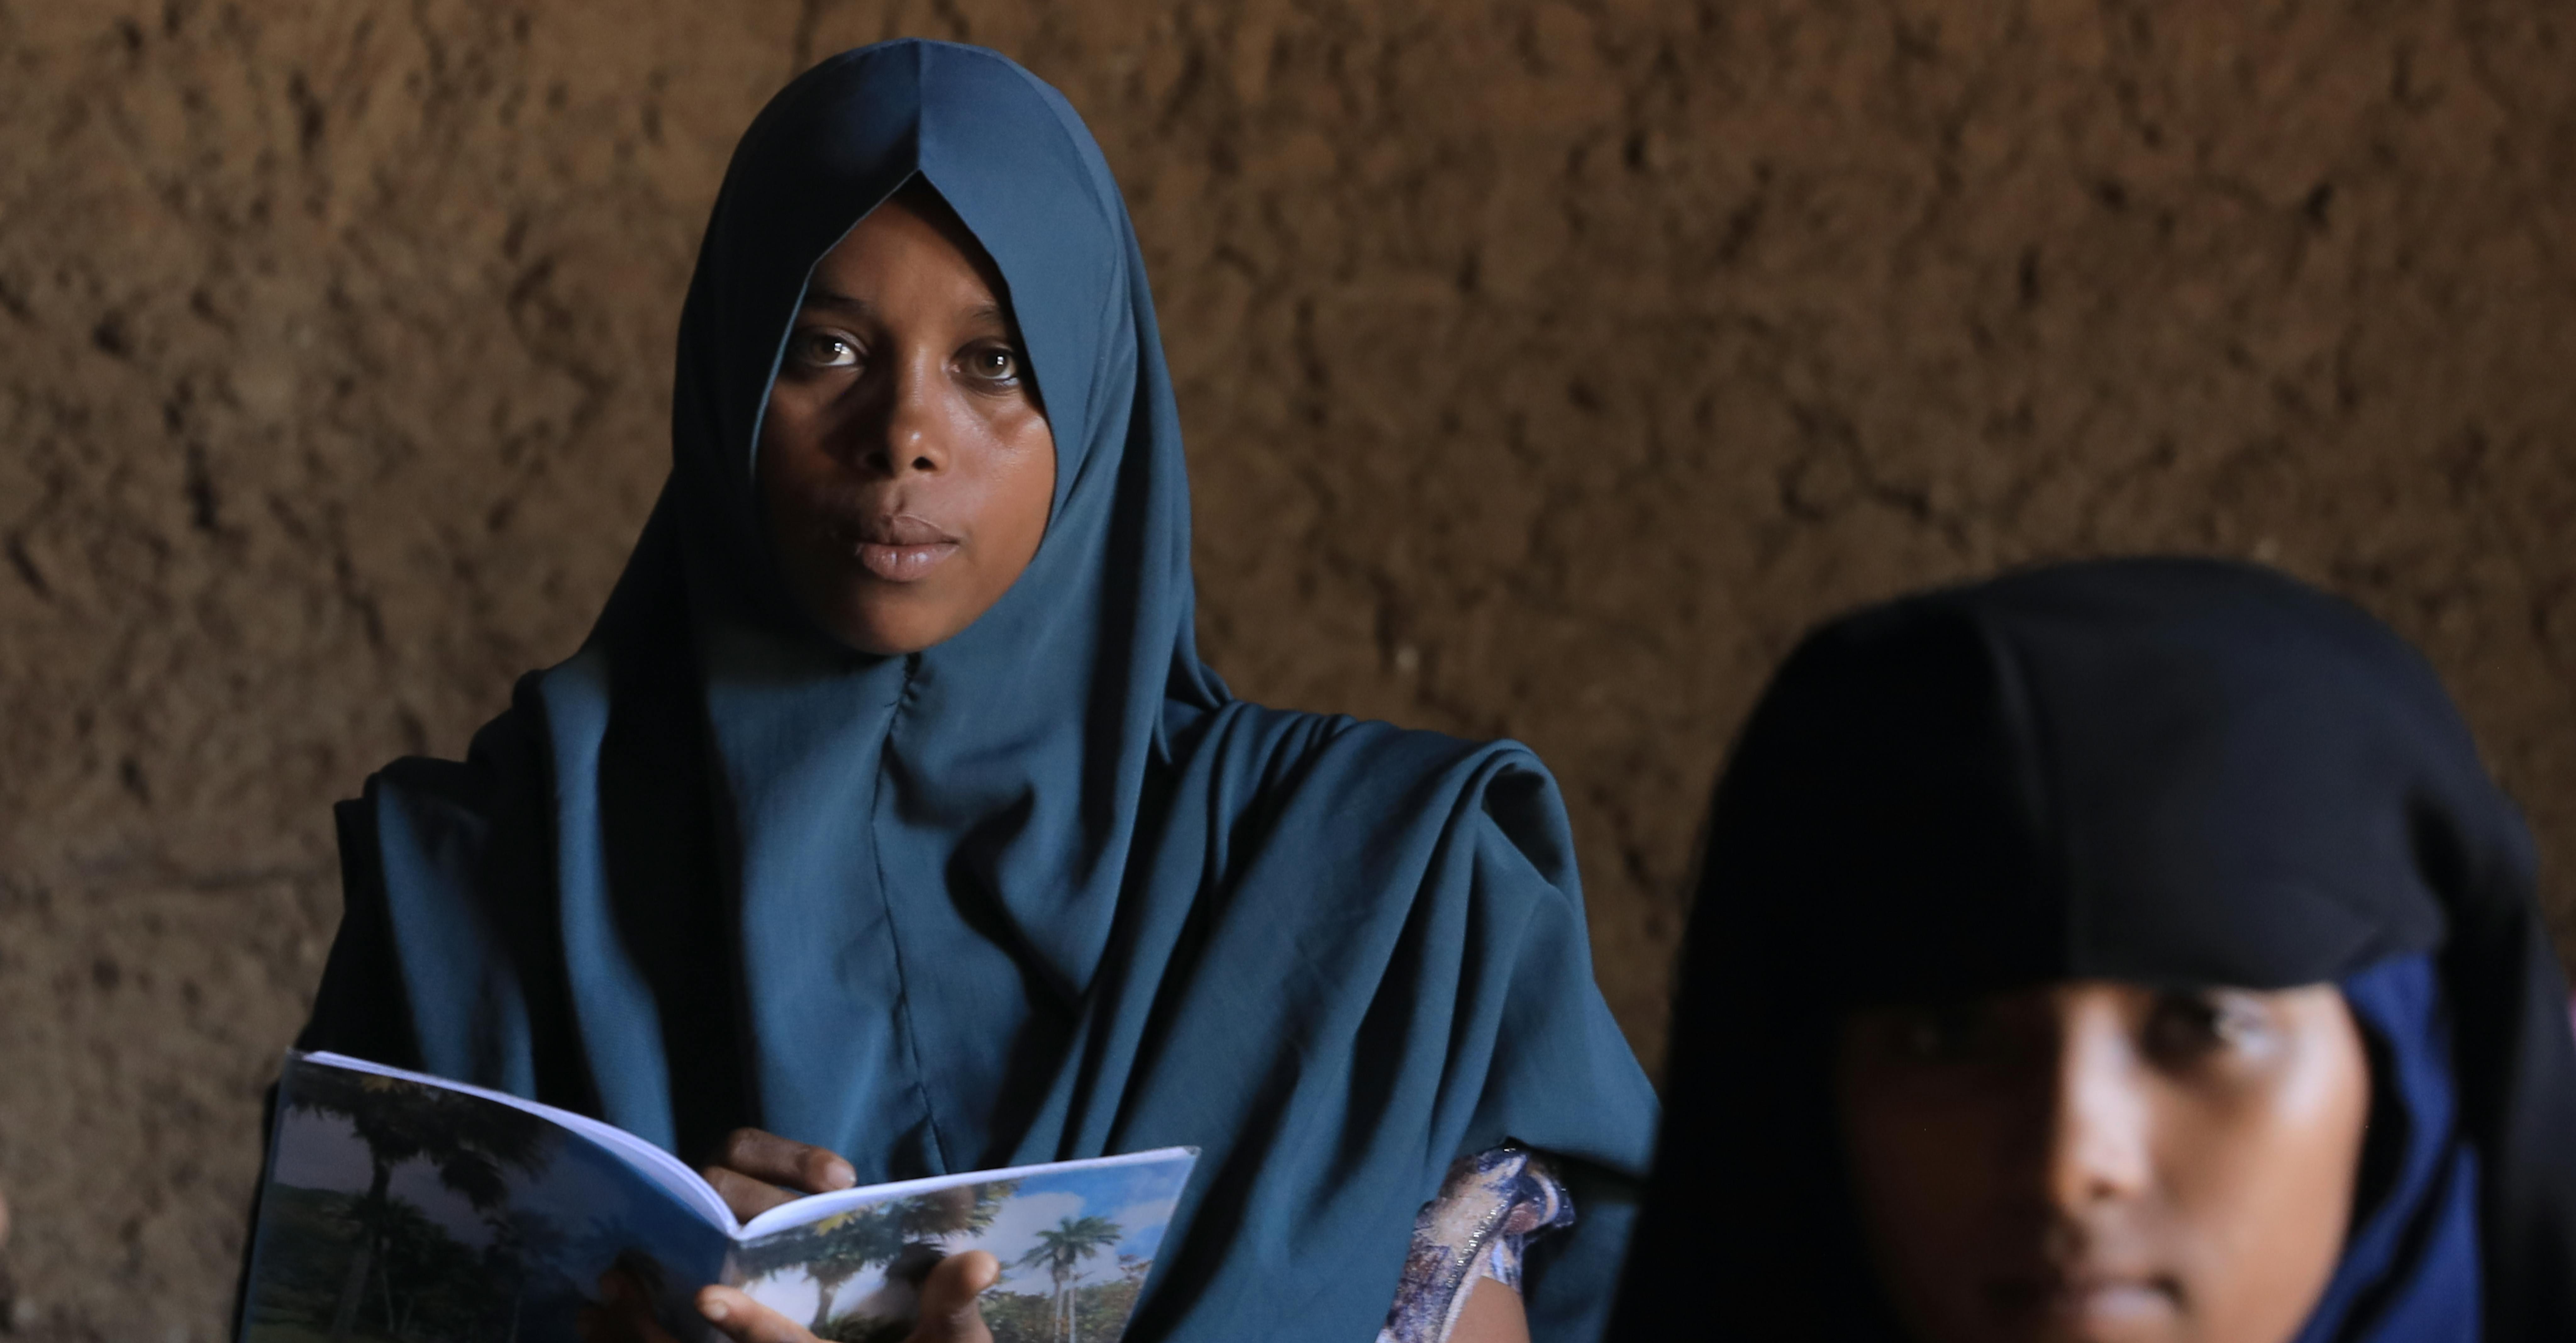 Etiopia: Fiinxee è stata costretta al matrimonio all'età di 13 anni. Non sapeva neanche l'età del marito: i genitori non avevano più risorse per sostenerla, a causa della siccità che ha colpito il paese